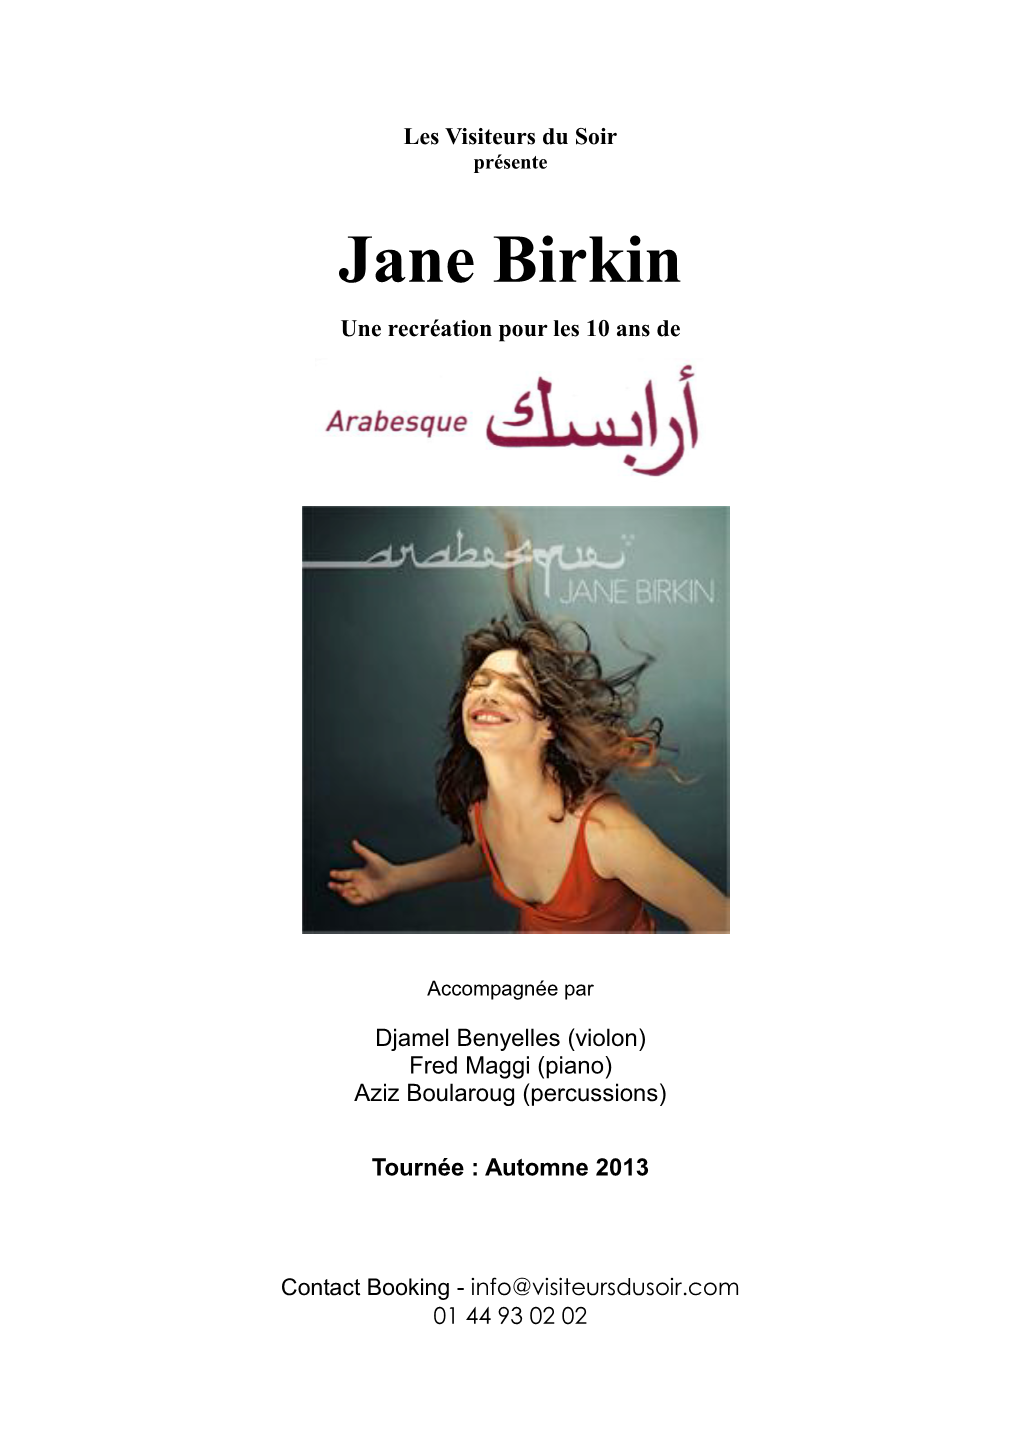 Jane Birkin Une Recréation Pour Les 10 Ans De